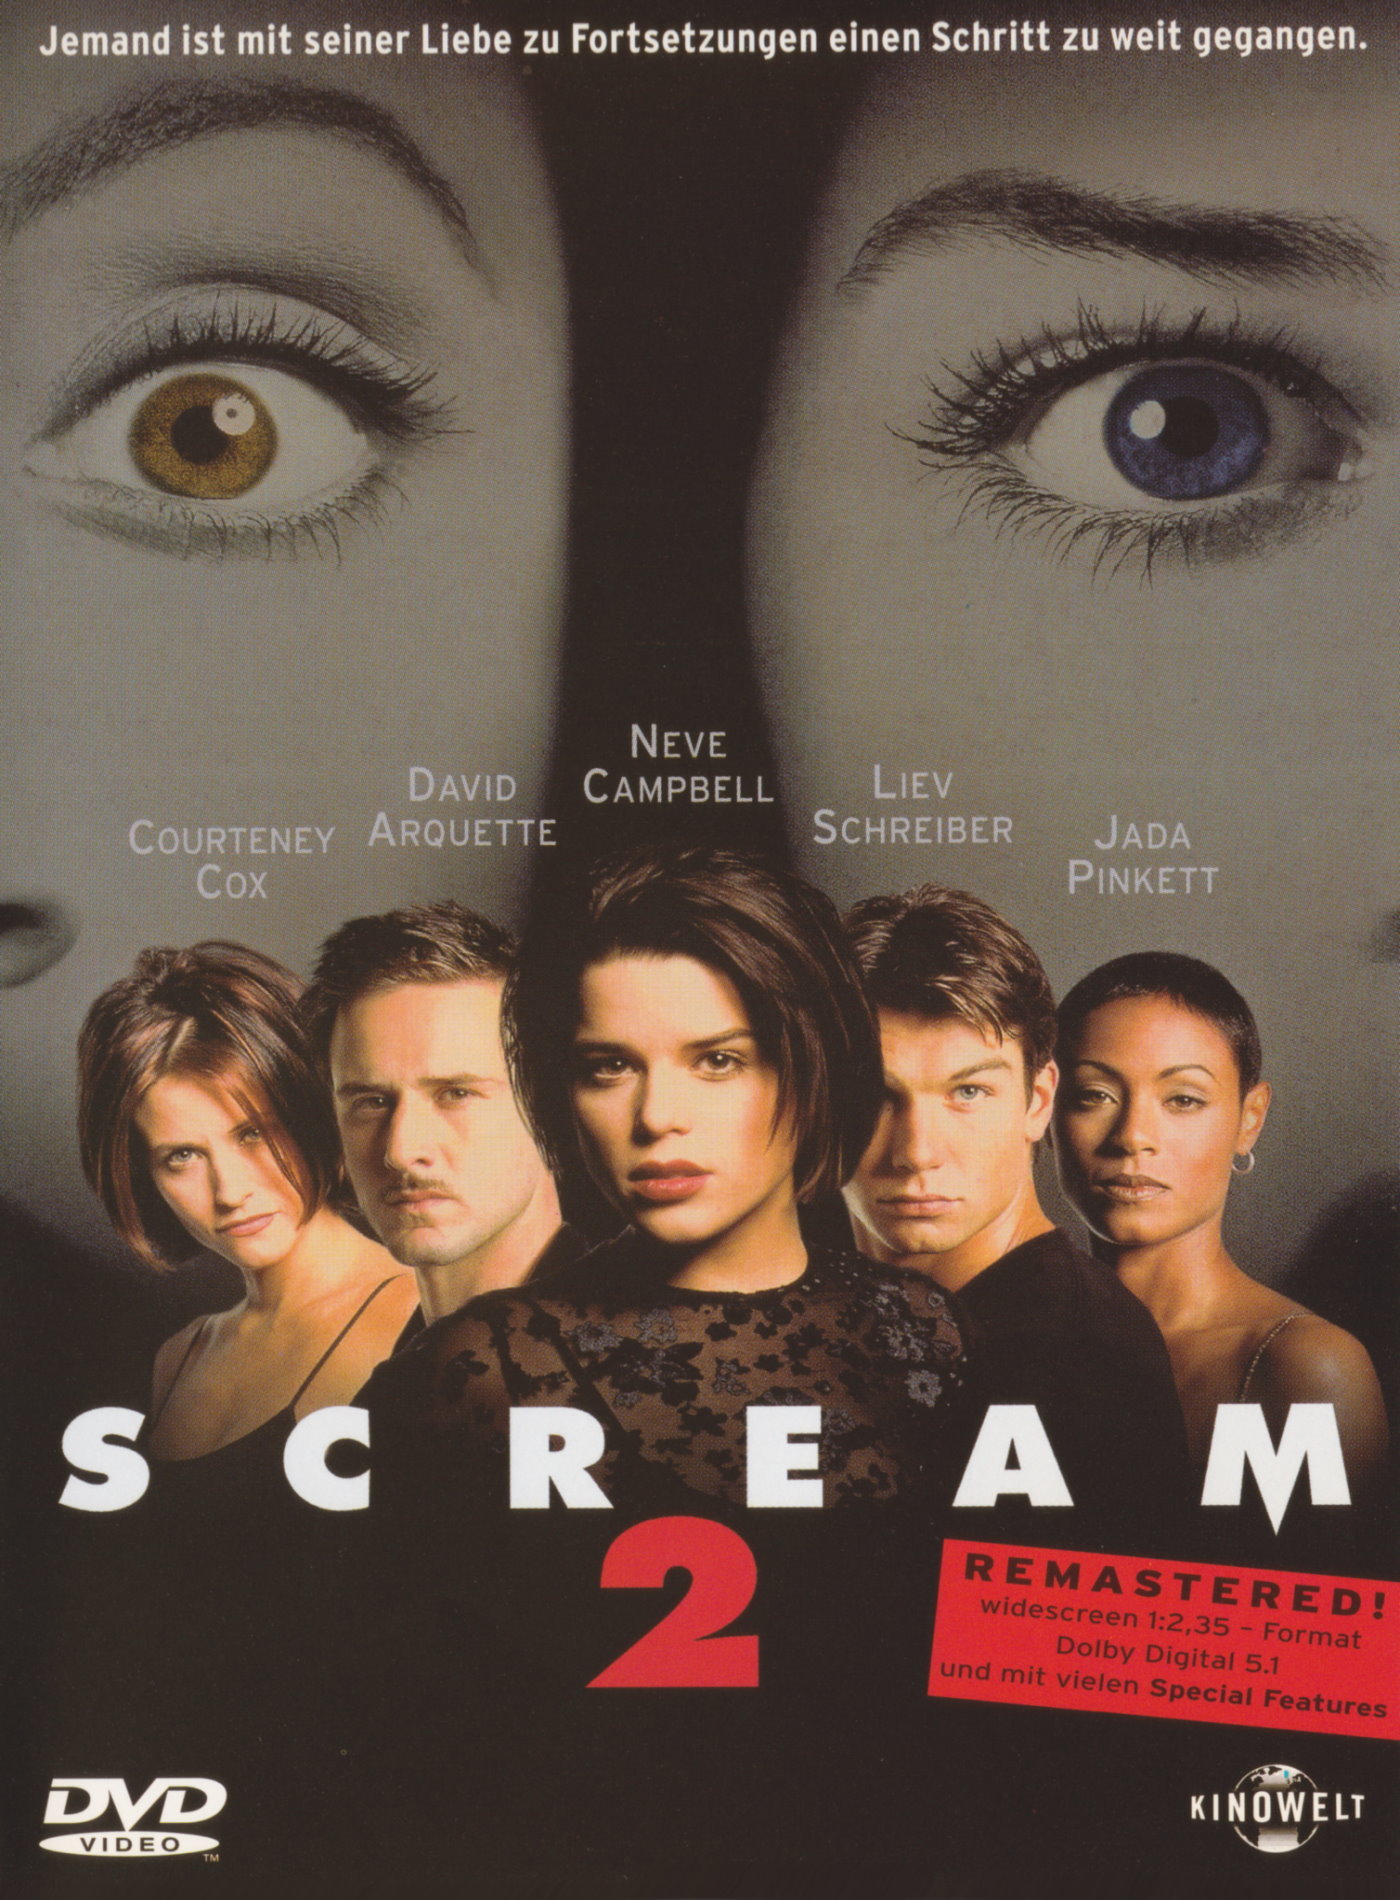 Cover - Scream 2.jpg